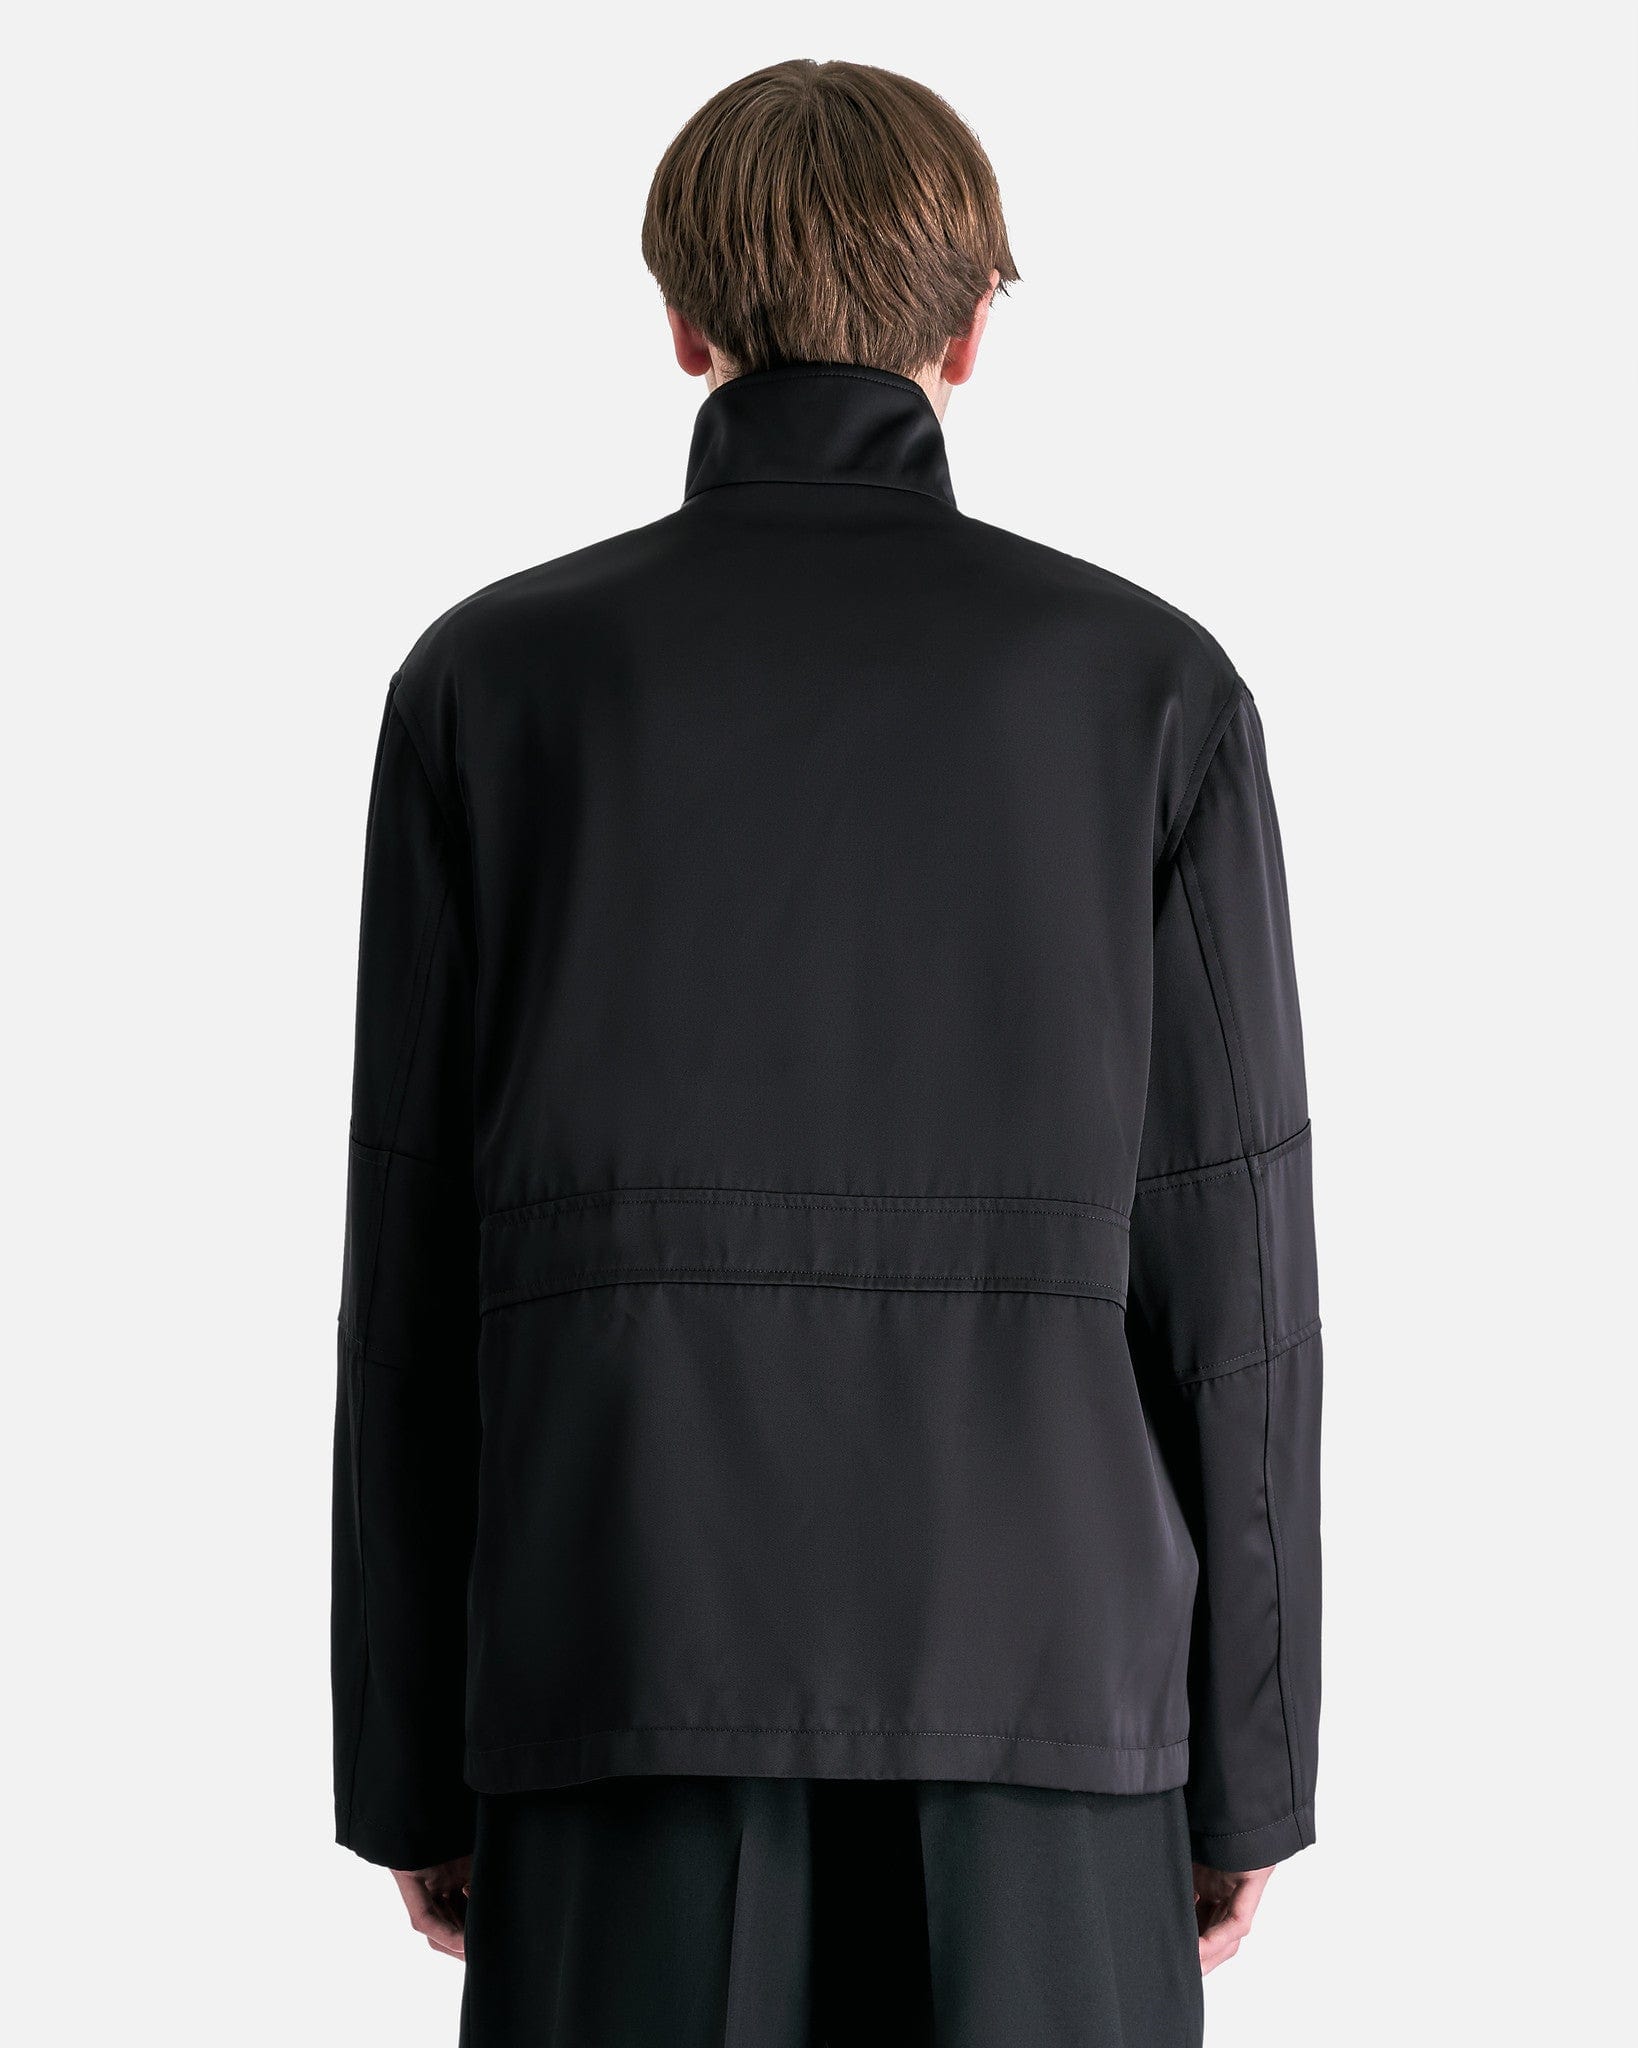 Jil Sander Men's Jackets Heavy Viscose Silk Twill Blouson in Black